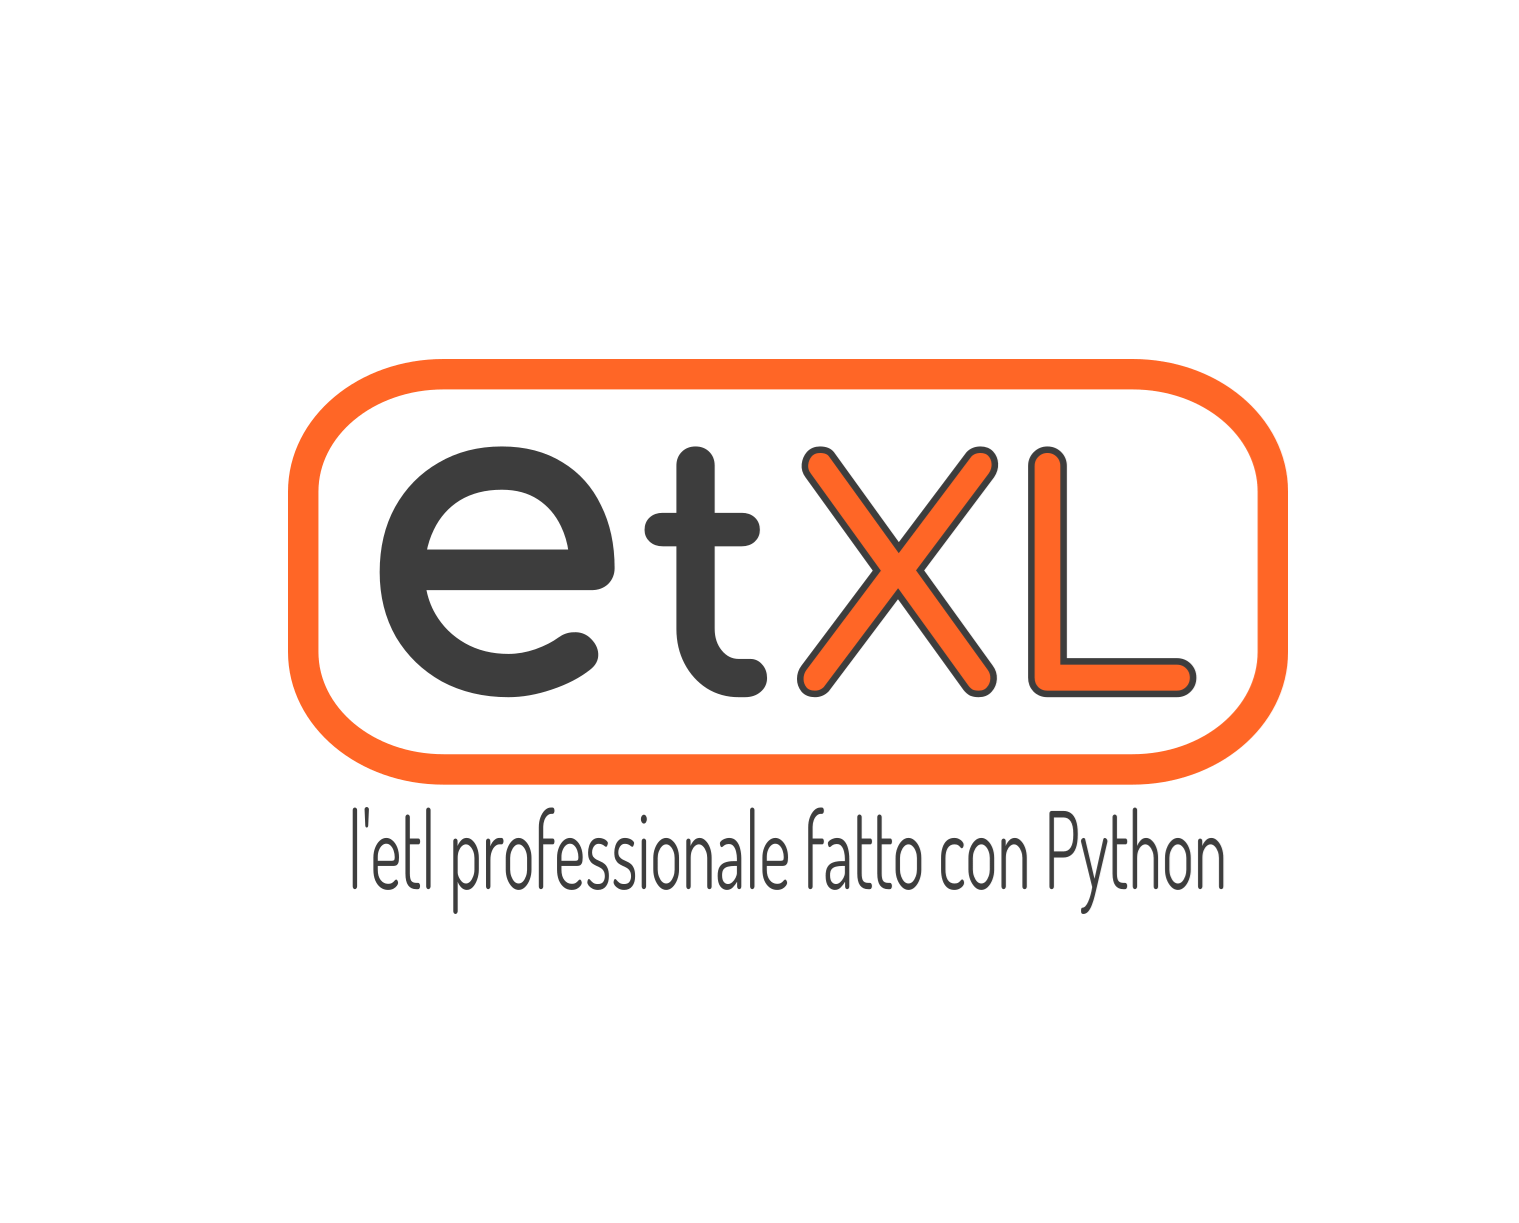 ETXL Manifesto. L’ETL professionale fatto con Python